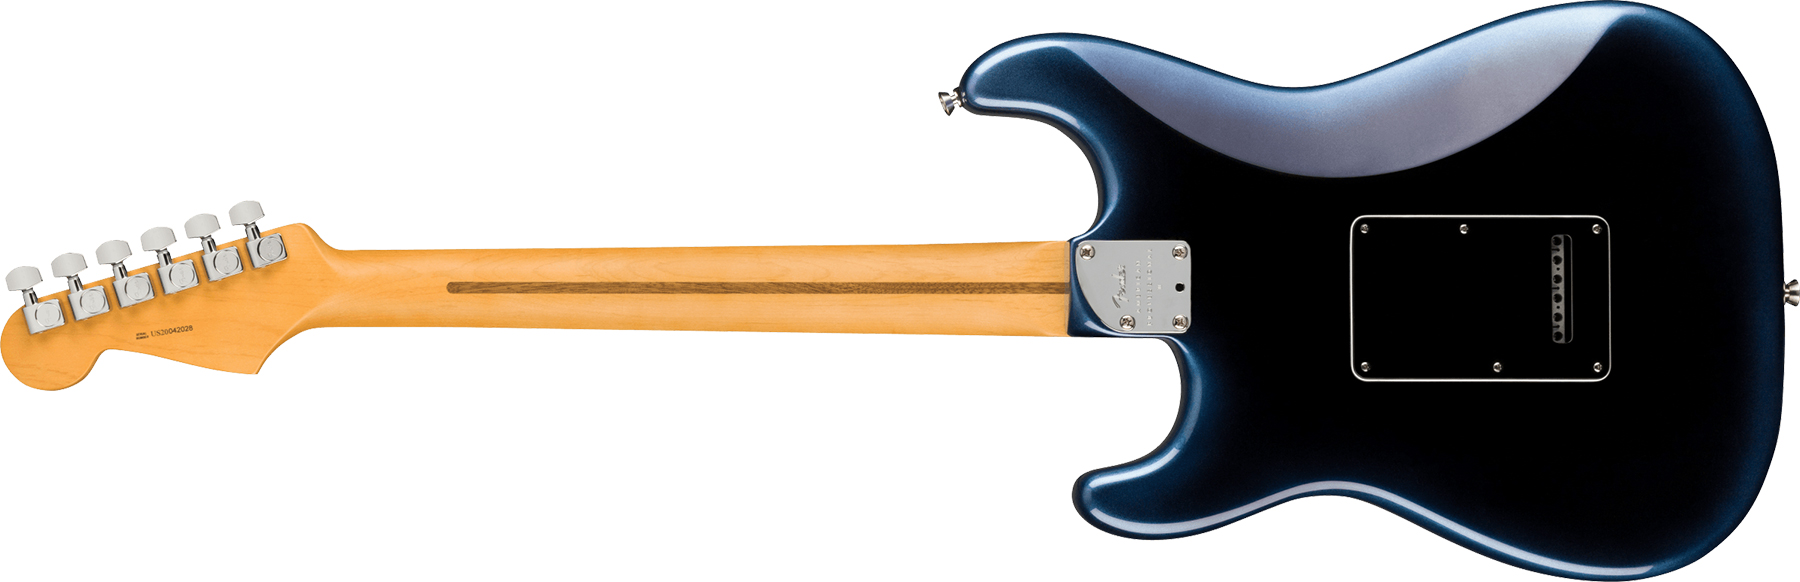 Fender Strat American Professional Ii Lh Gaucher Usa Rw - Dark Night - Guitarra electrica para zurdos - Variation 1